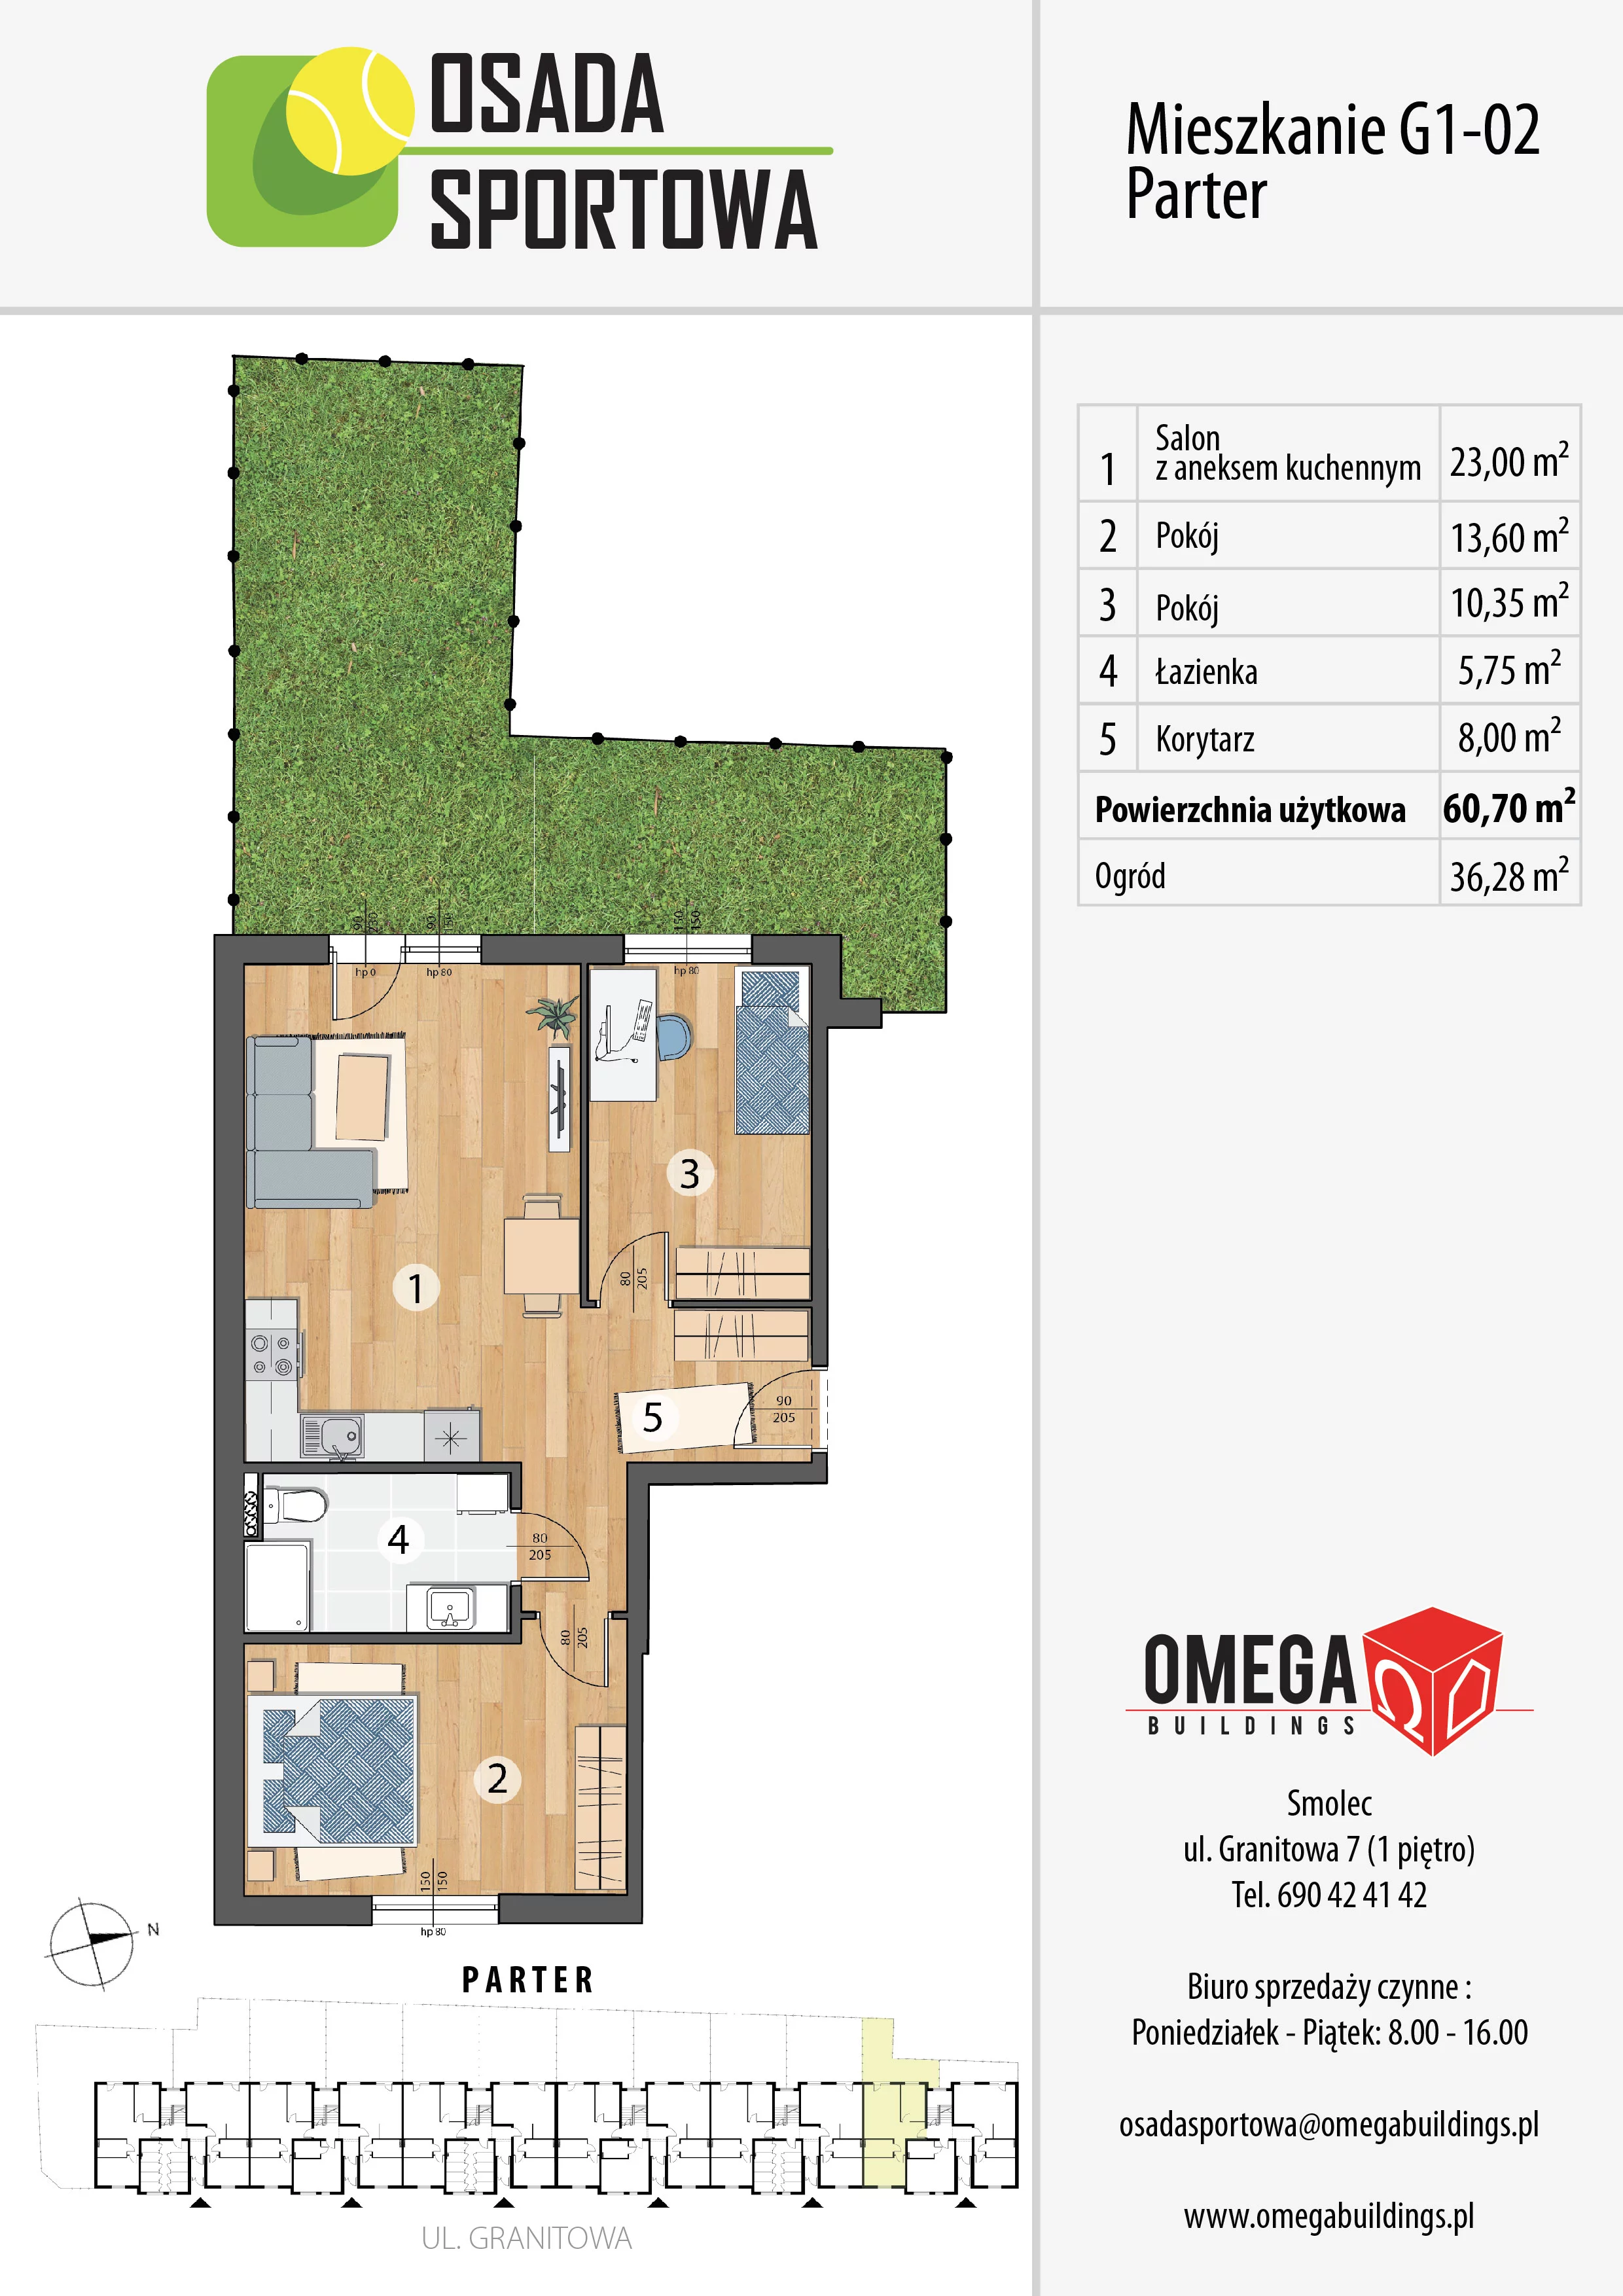 Mieszkanie 60,70 m², parter, oferta nr G1-02, Osada Sportowa Budynek G, Smolec, ul. Granitowa 52-62